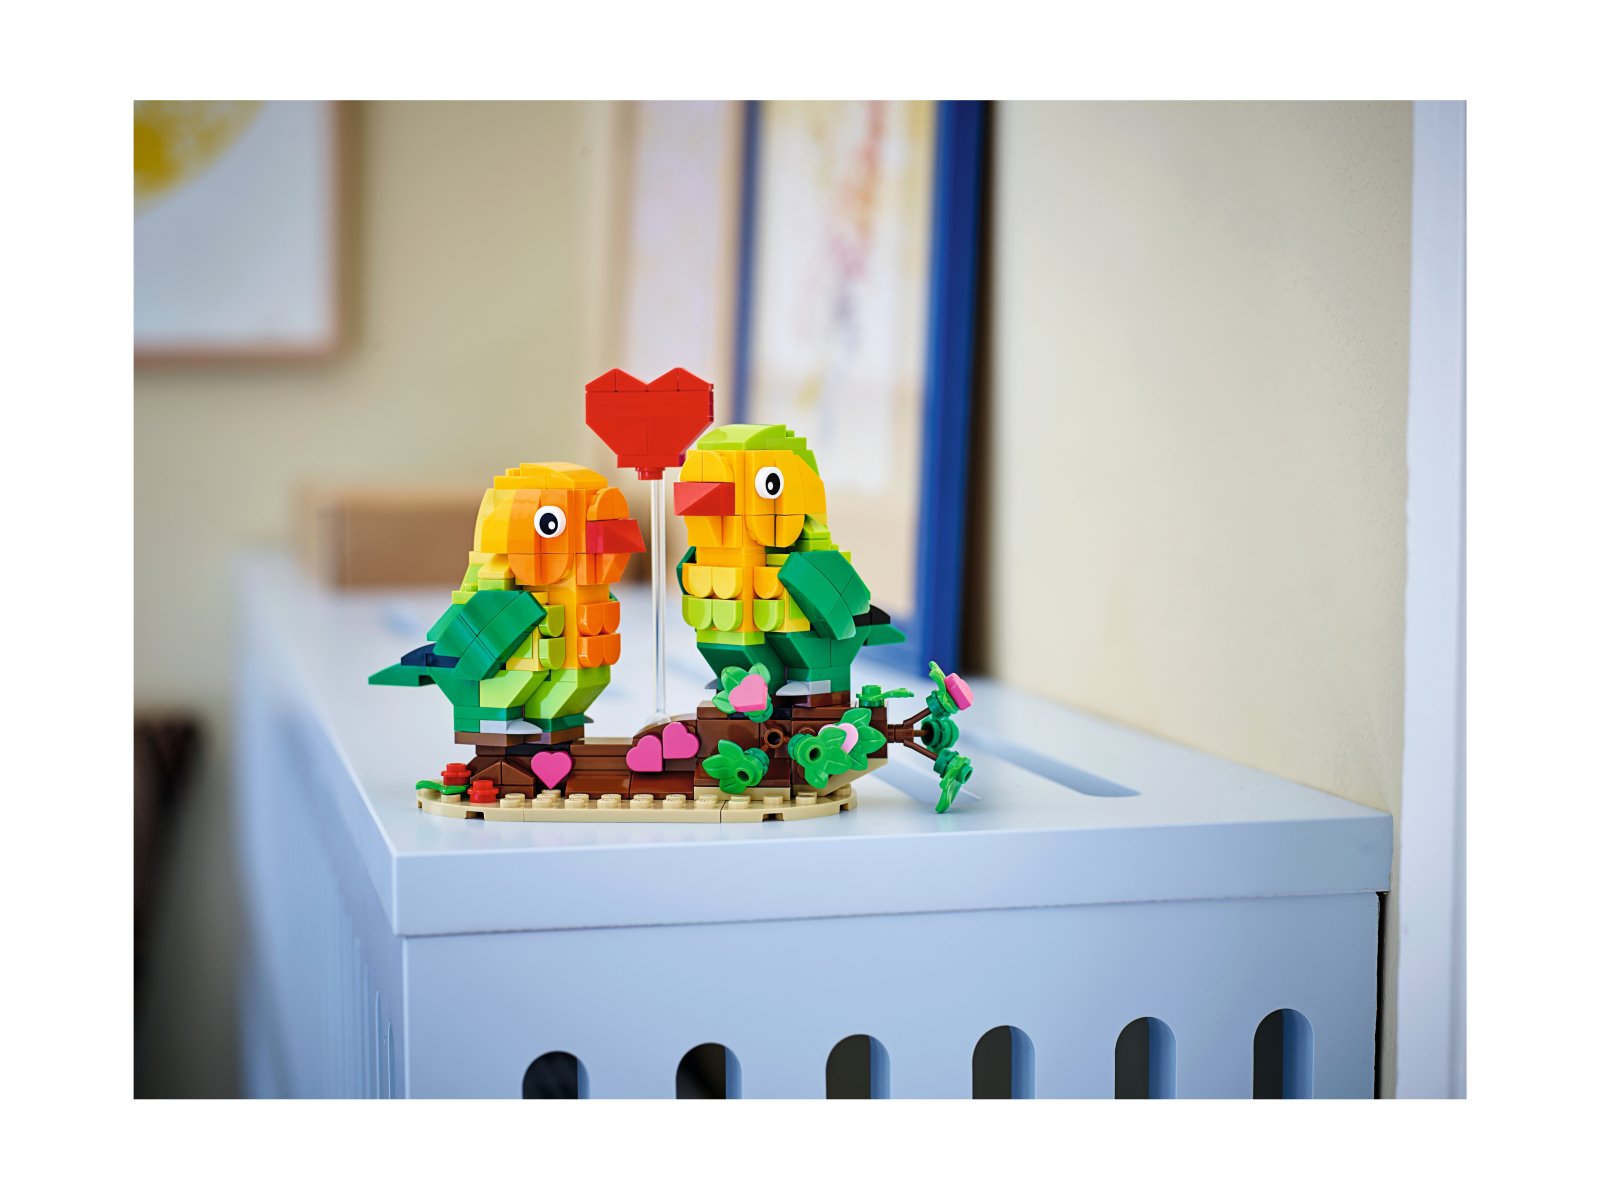 LEGO 40522 Walentynkowe papużki nierozłączki